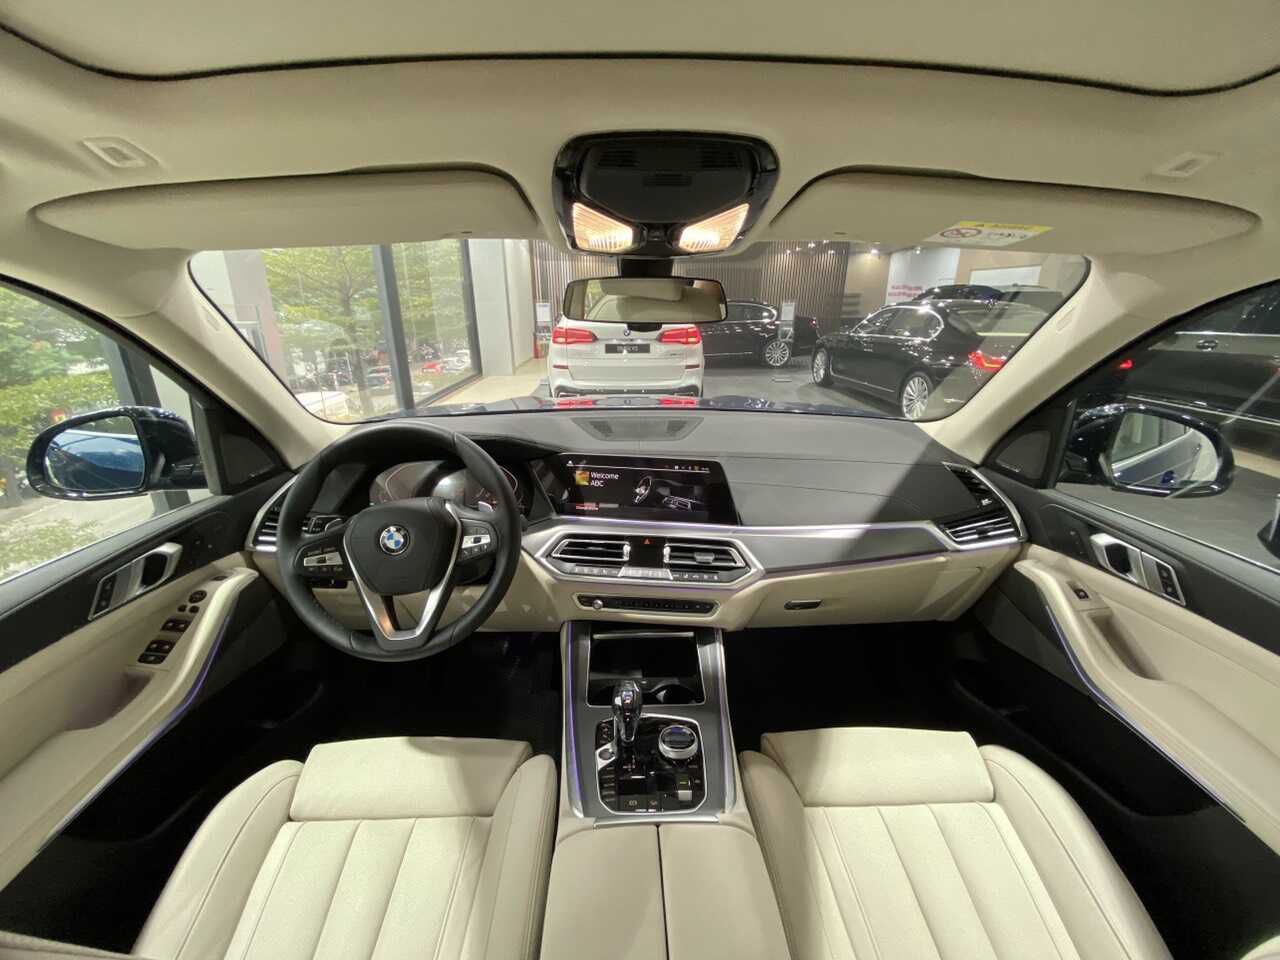 Ghế ngồi trên BMW X5 2023 được bọc da dày dặn cao cấp, cho cảm giác ngồi rất êm